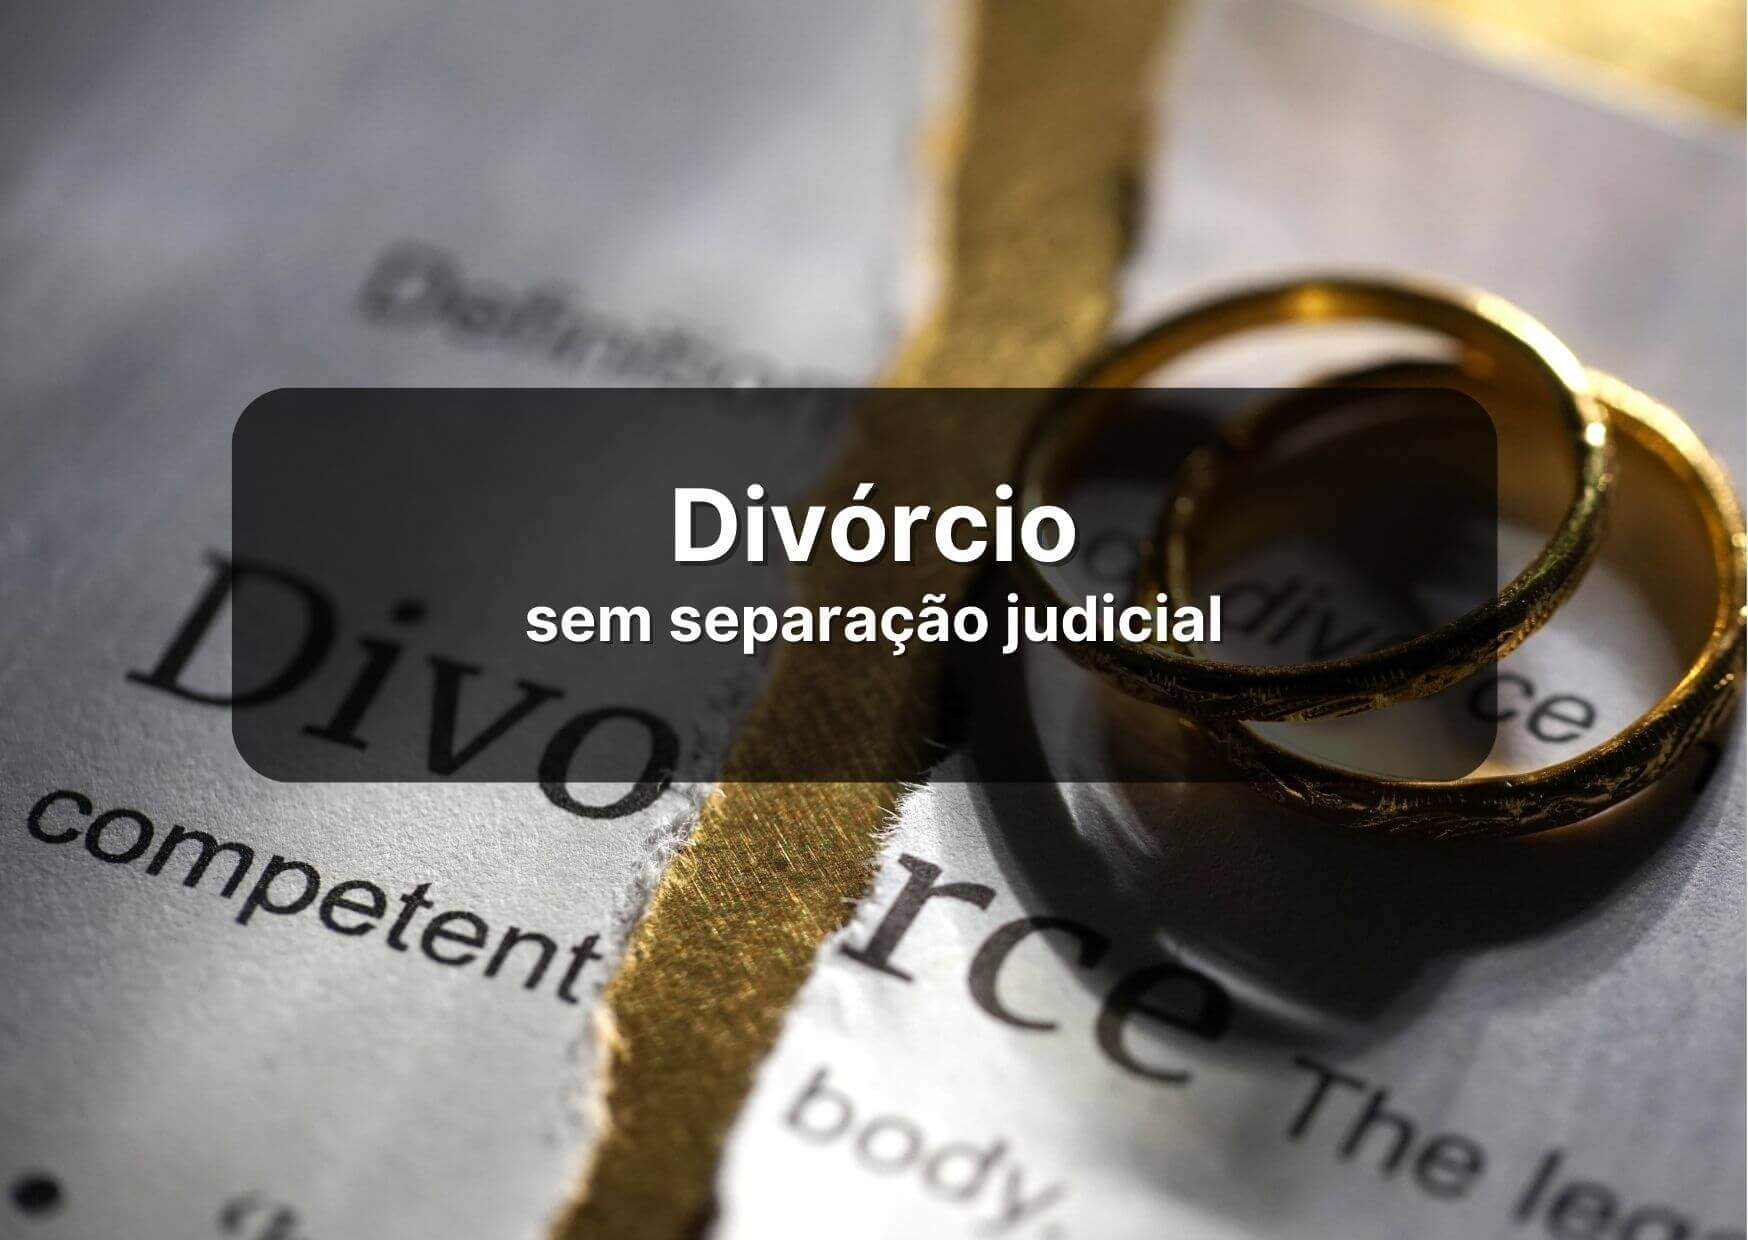 Imagem de anéis de ouro sob folha rasgada, escrita "divorce".